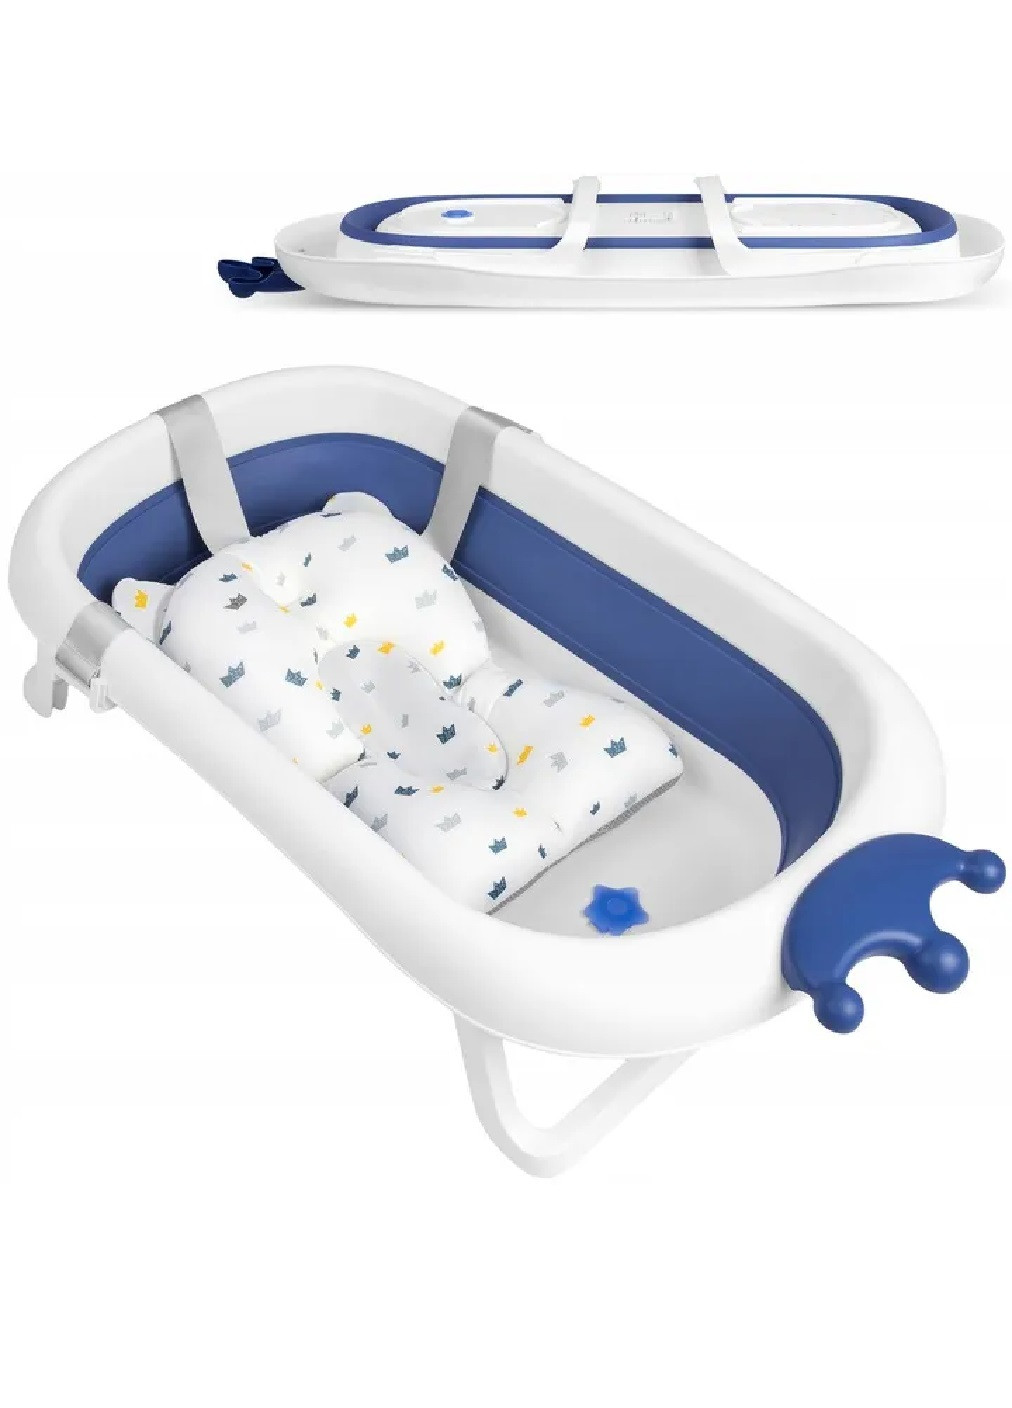 Складная компактная портативная переносная ванночка с подушкой нескользящей отделкой для детей малышей (475151-Prob) Бело-синяя Unbranded (262452218)